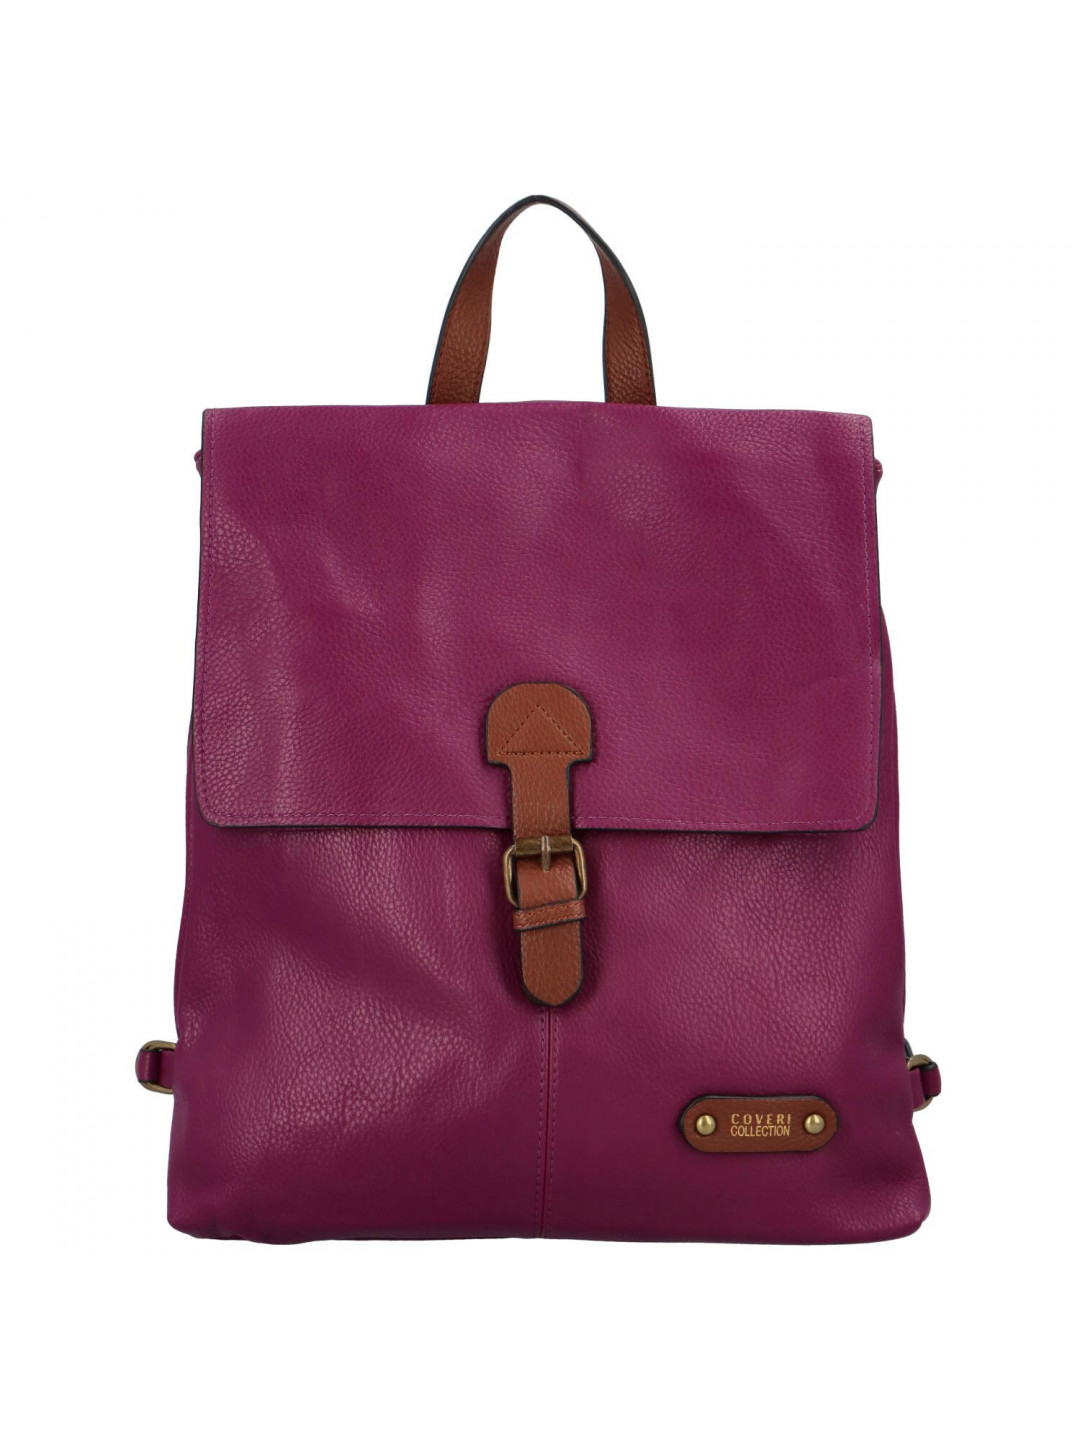 Dámský kabelko batoh purpurový – Coveri Albertine